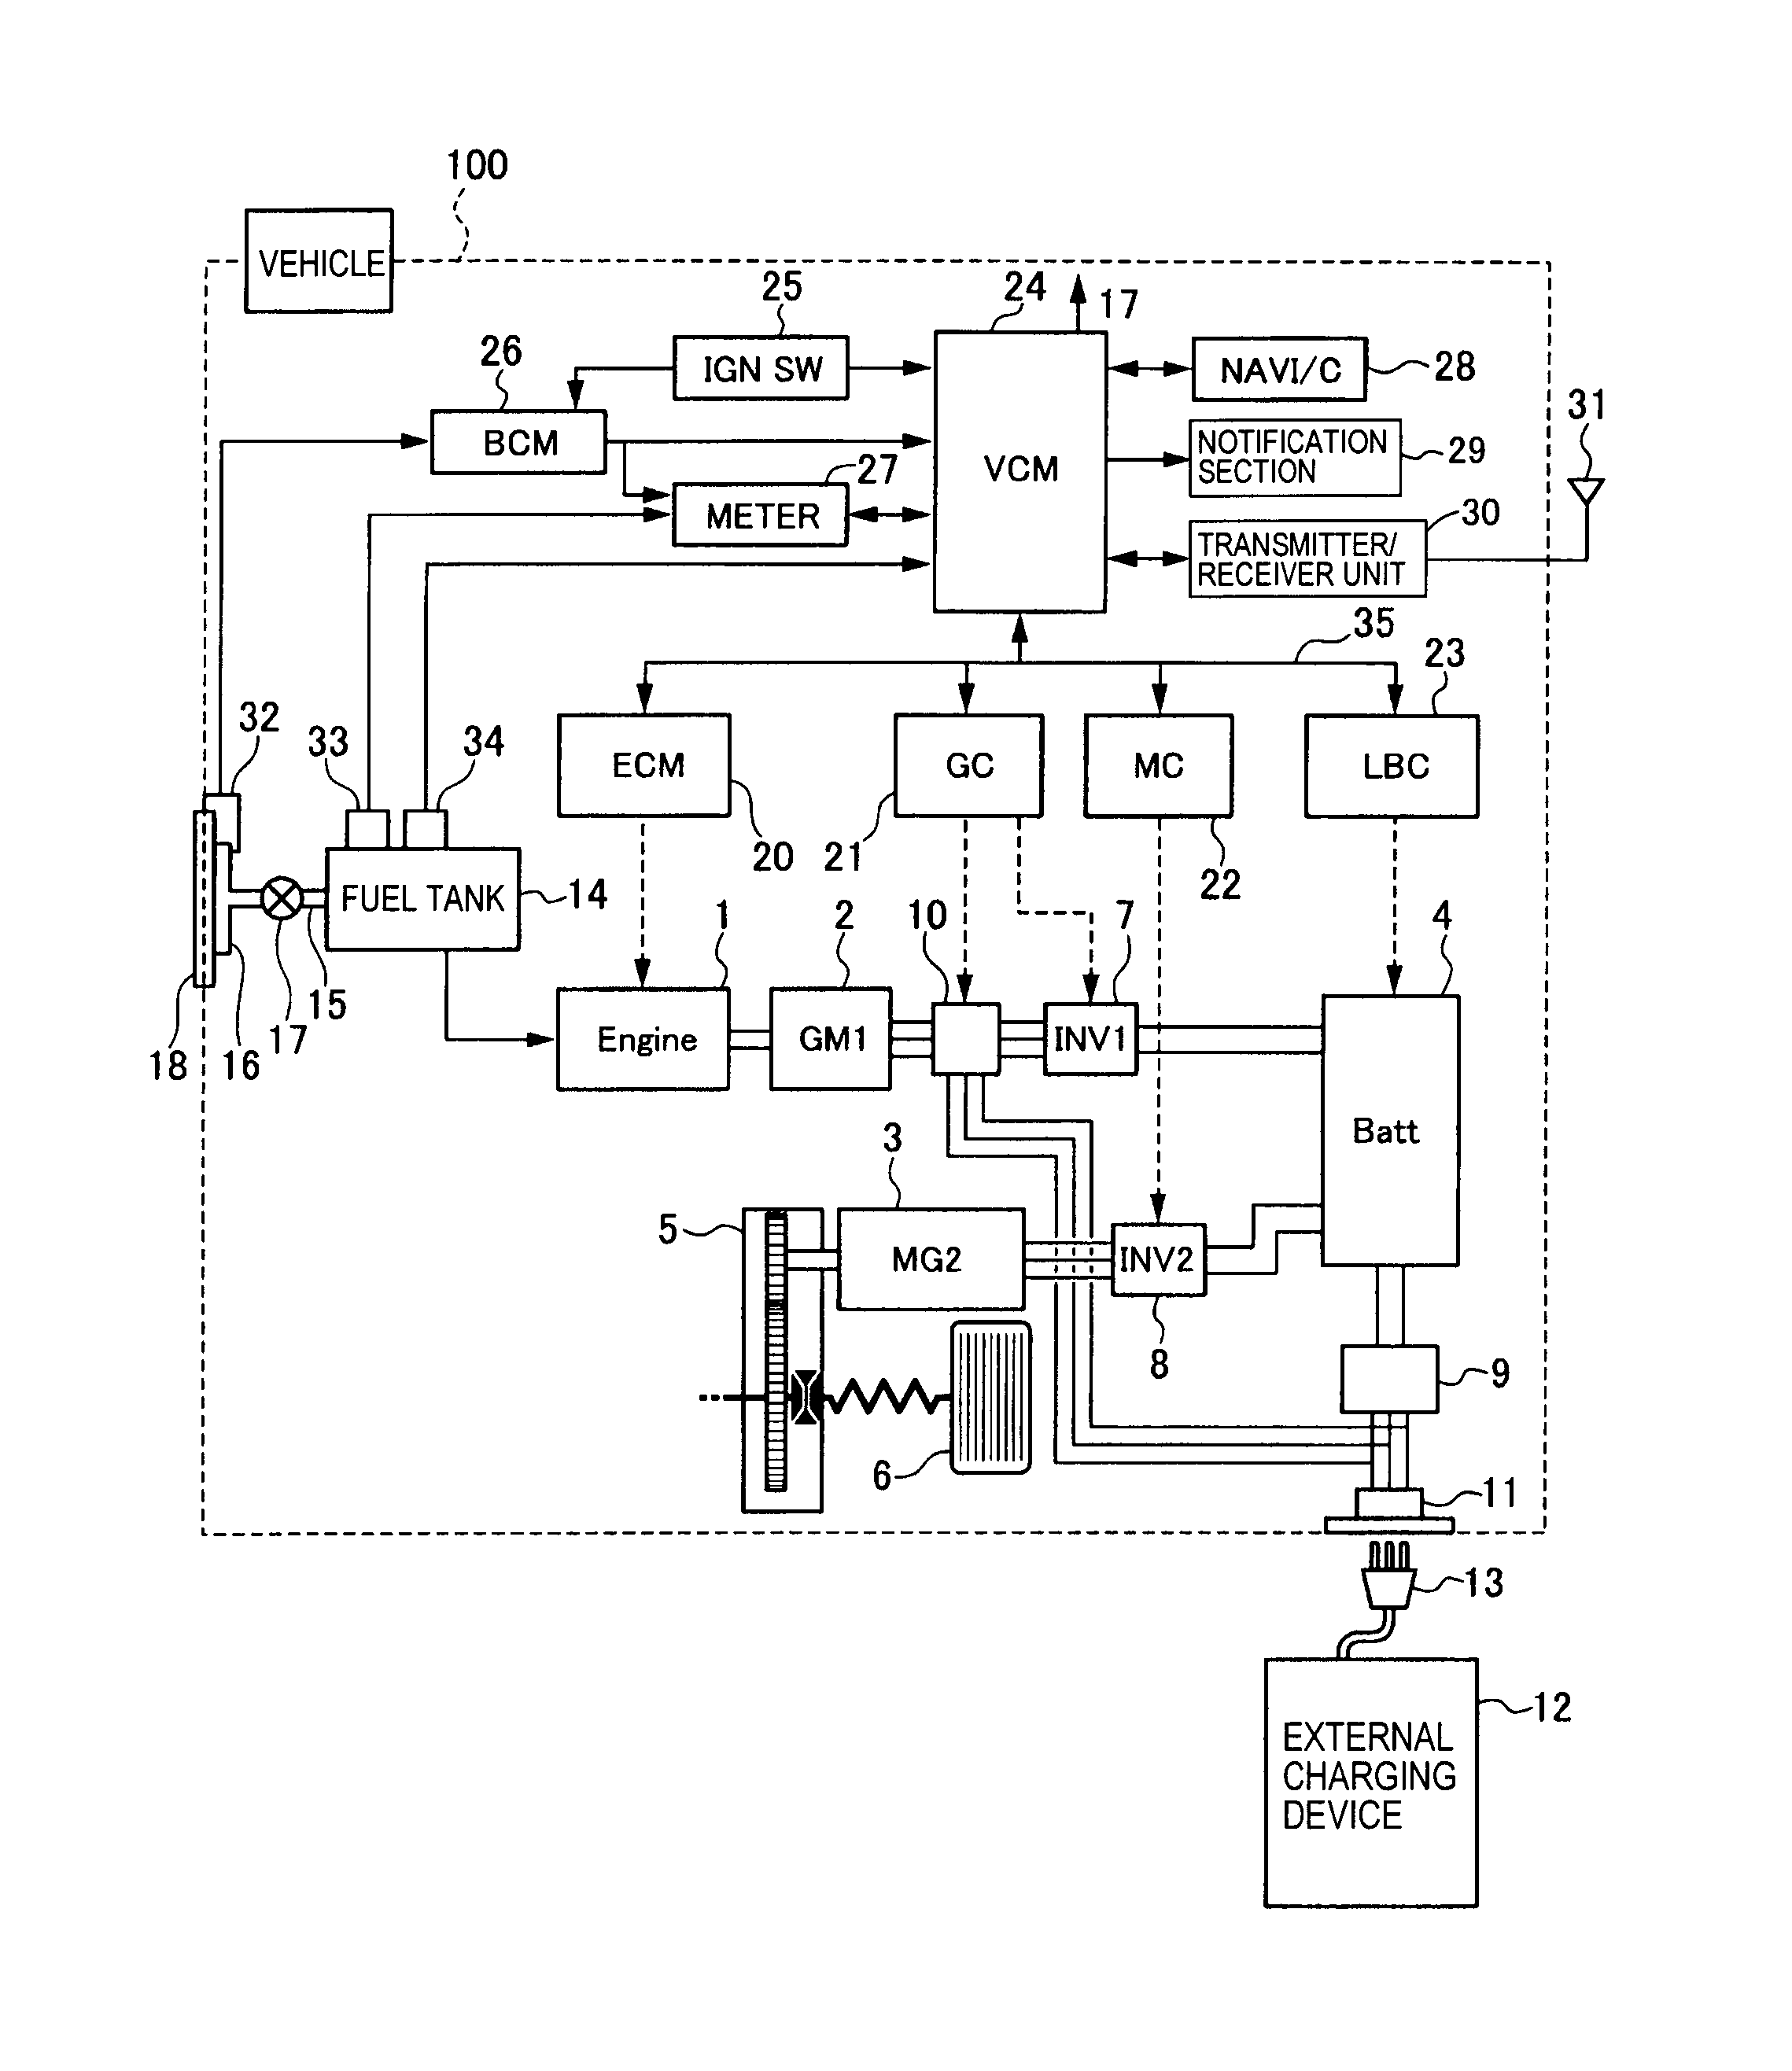 aiphone c-ml wiring diagram